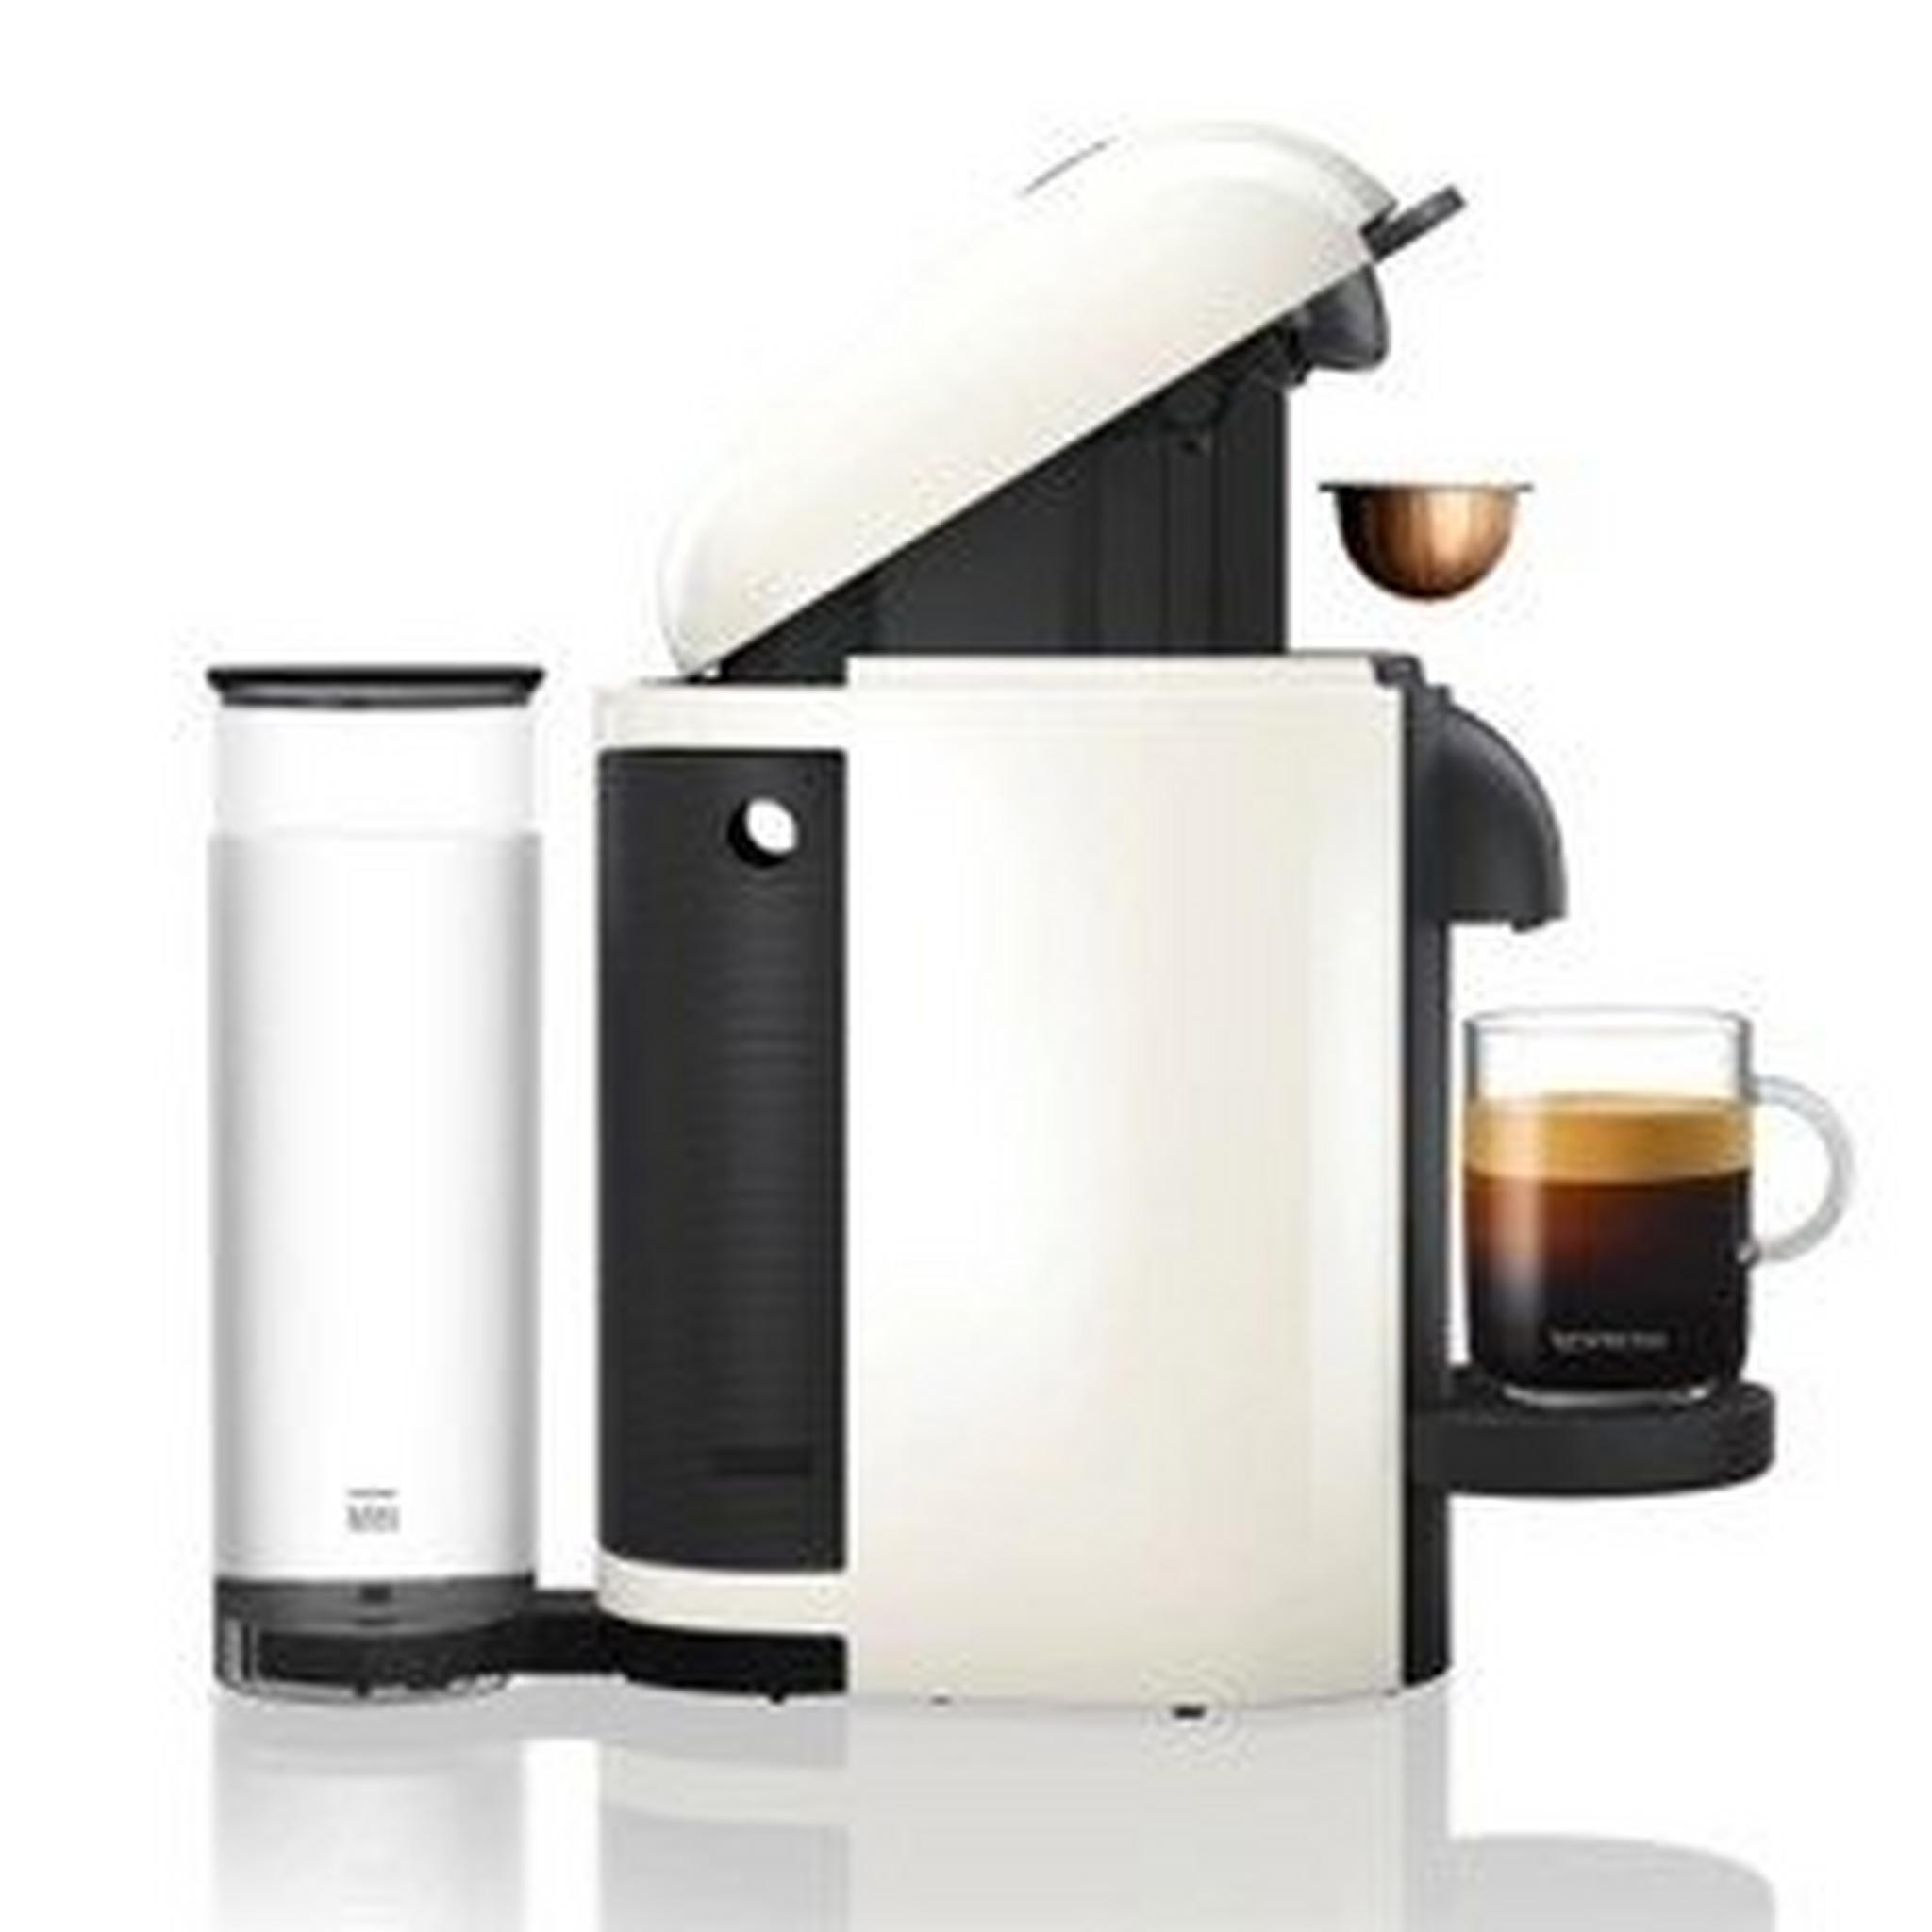 ماكينة صنع القهوة والإسبريسو فيرتو لاين مع خافق الحليب ايروتشينو بلس من من نسبريسو، قدرة 1300 وات، سعة 1.1 لتر، VLB-GCB2-GB-WH-NE1 NE – أبيض